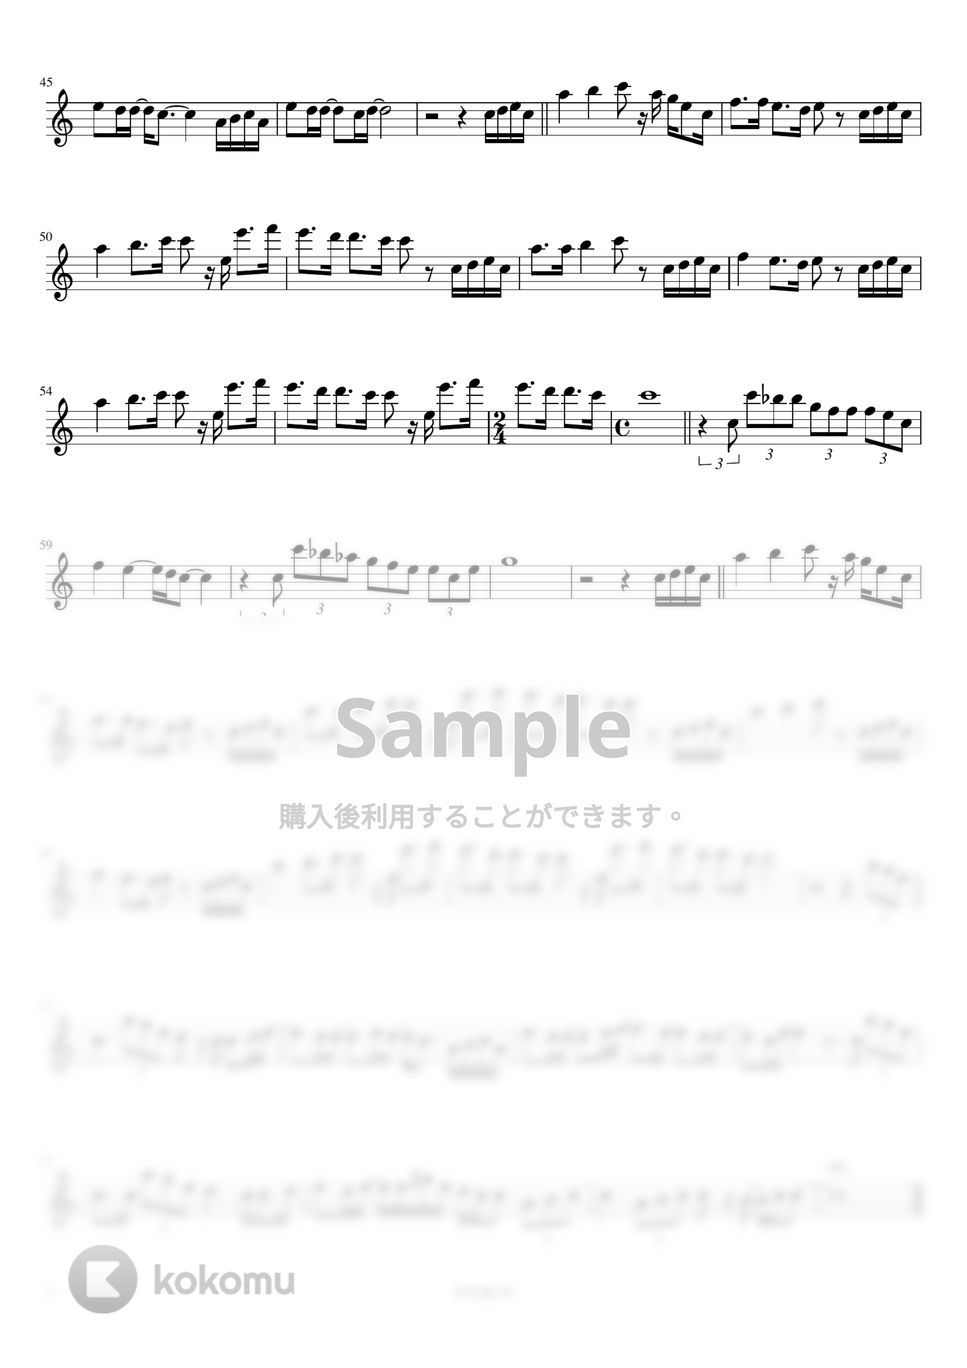 幾田 りら - Answer (フルート / C管用メロディー譜) by もりたあいか